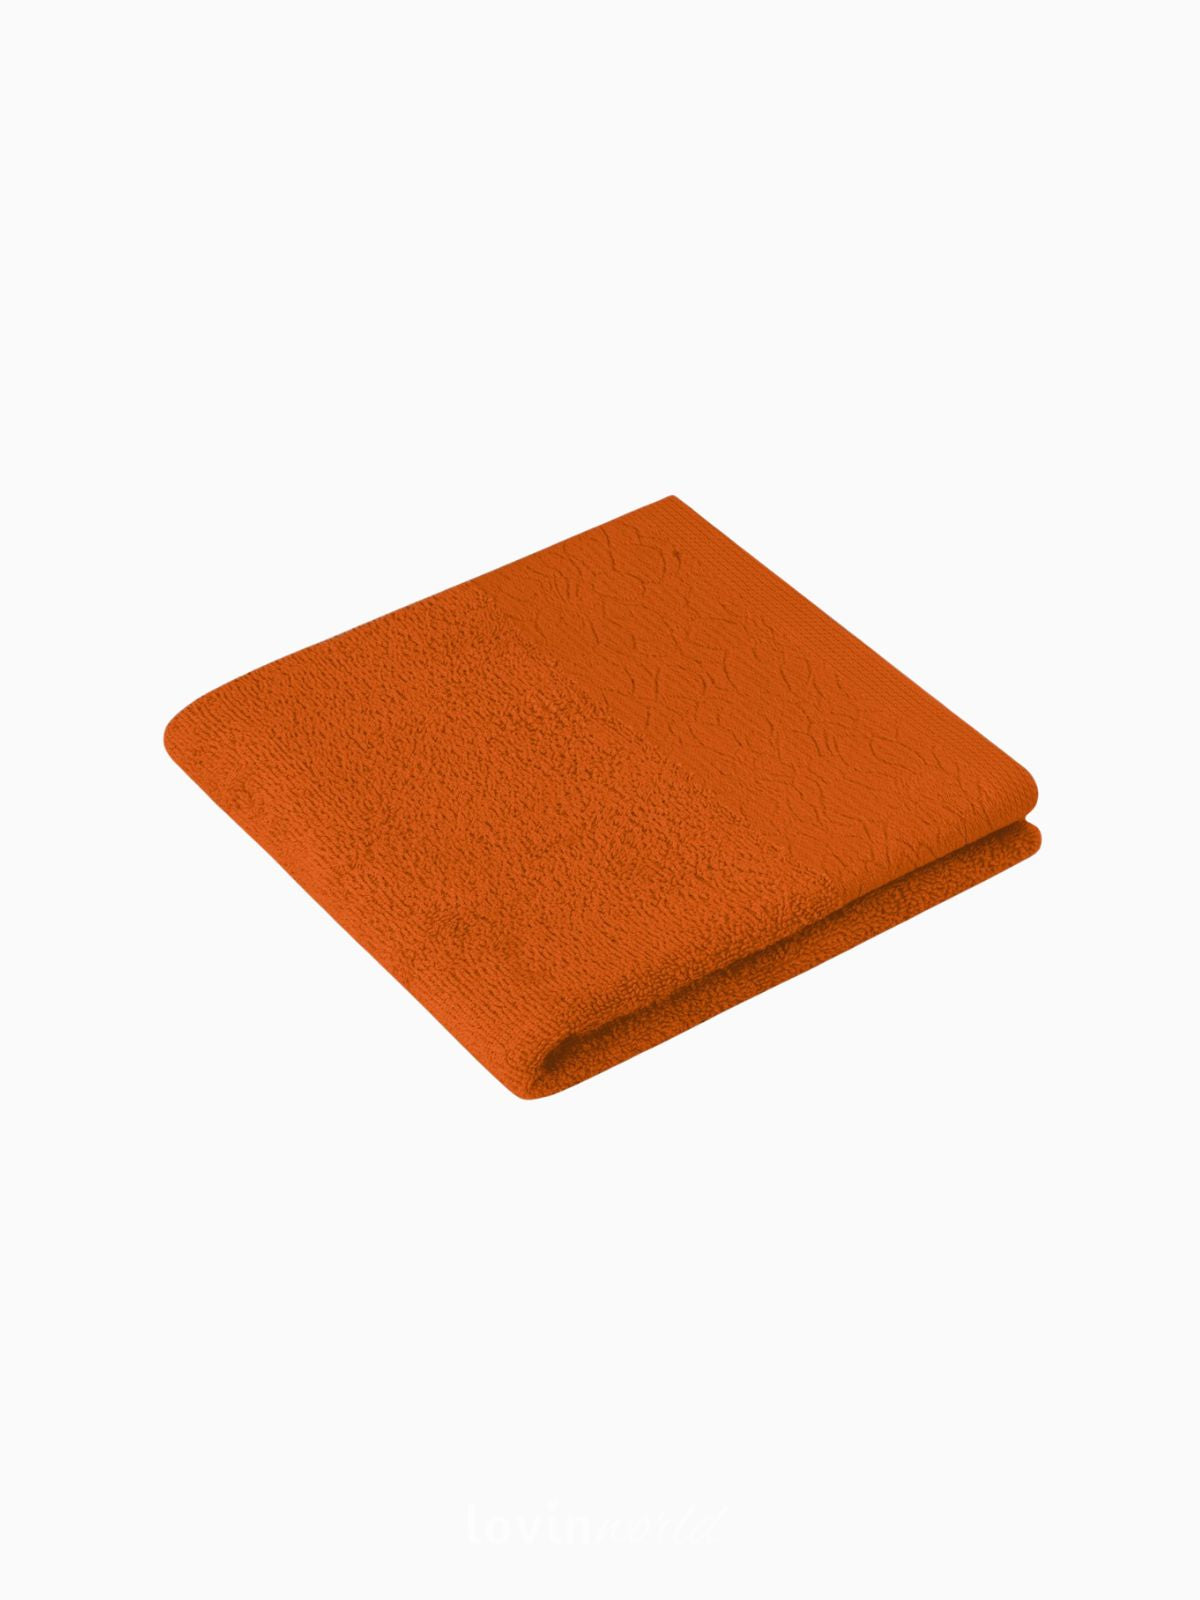 Set 6 Asciugamani da bagno Flos in 100% cotone, colore arancio e beige-3